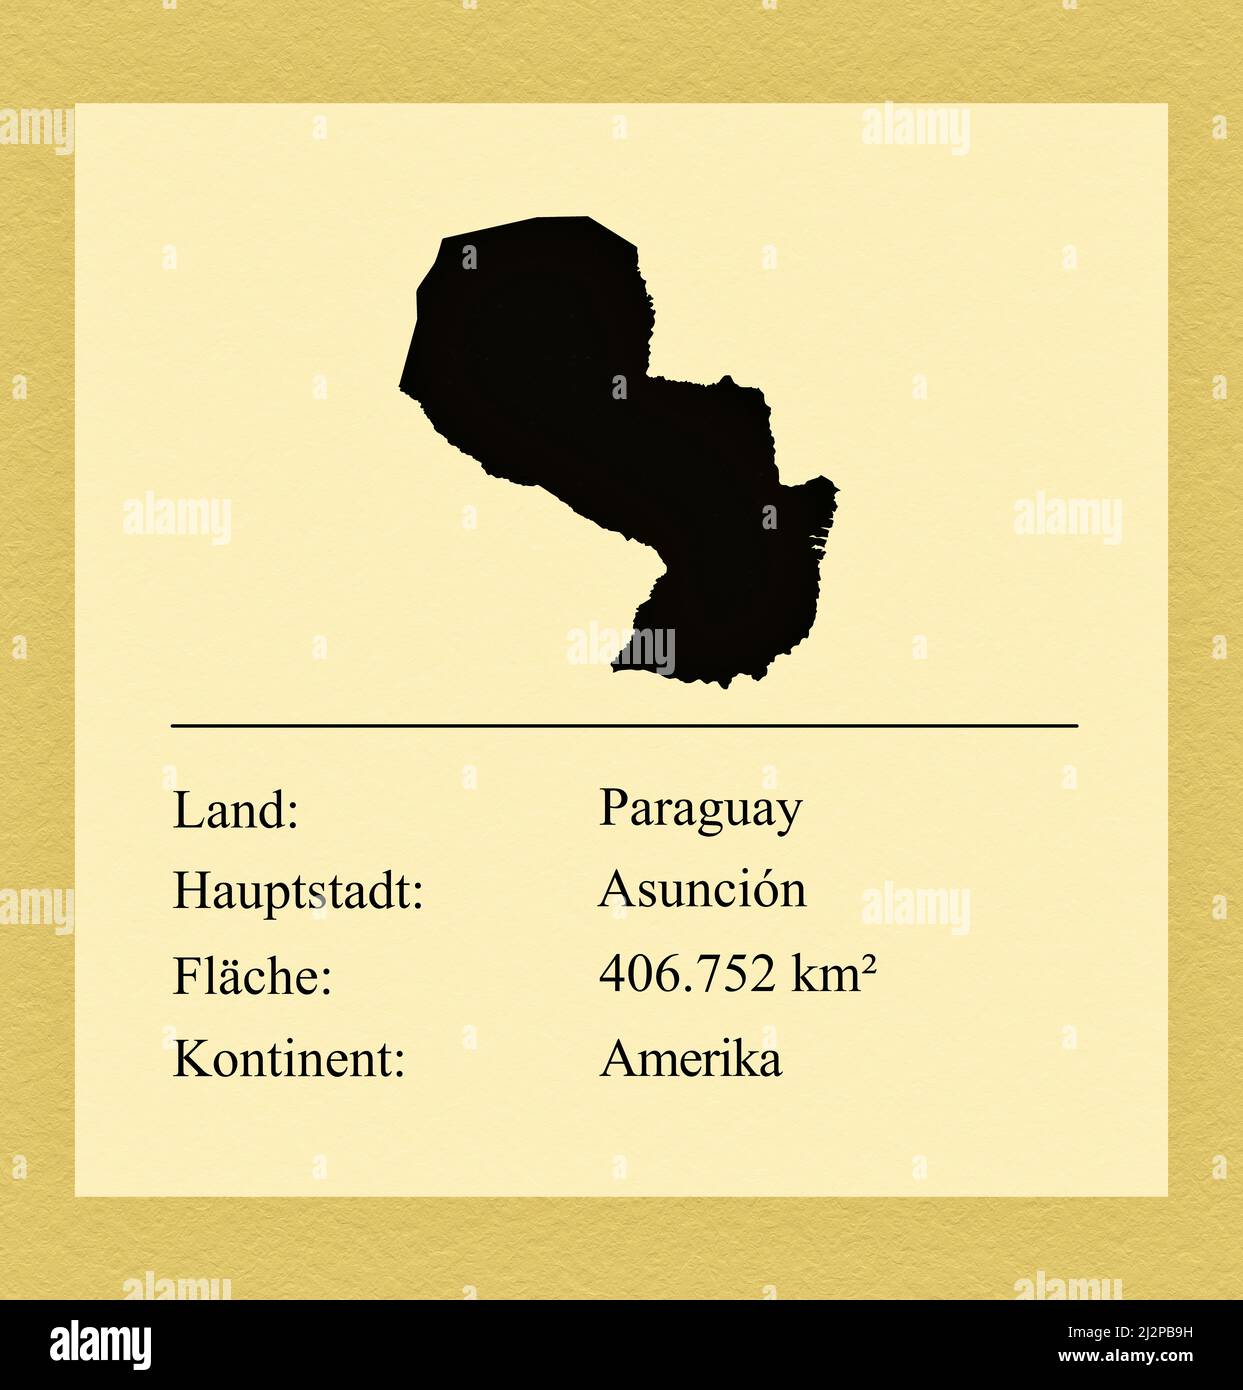 Umrisse des Landes Paraguay, darunter ein kleiner Steckbrief mit Ländernamen, Hauptstadt, Fläche und Kontinent Foto de stock